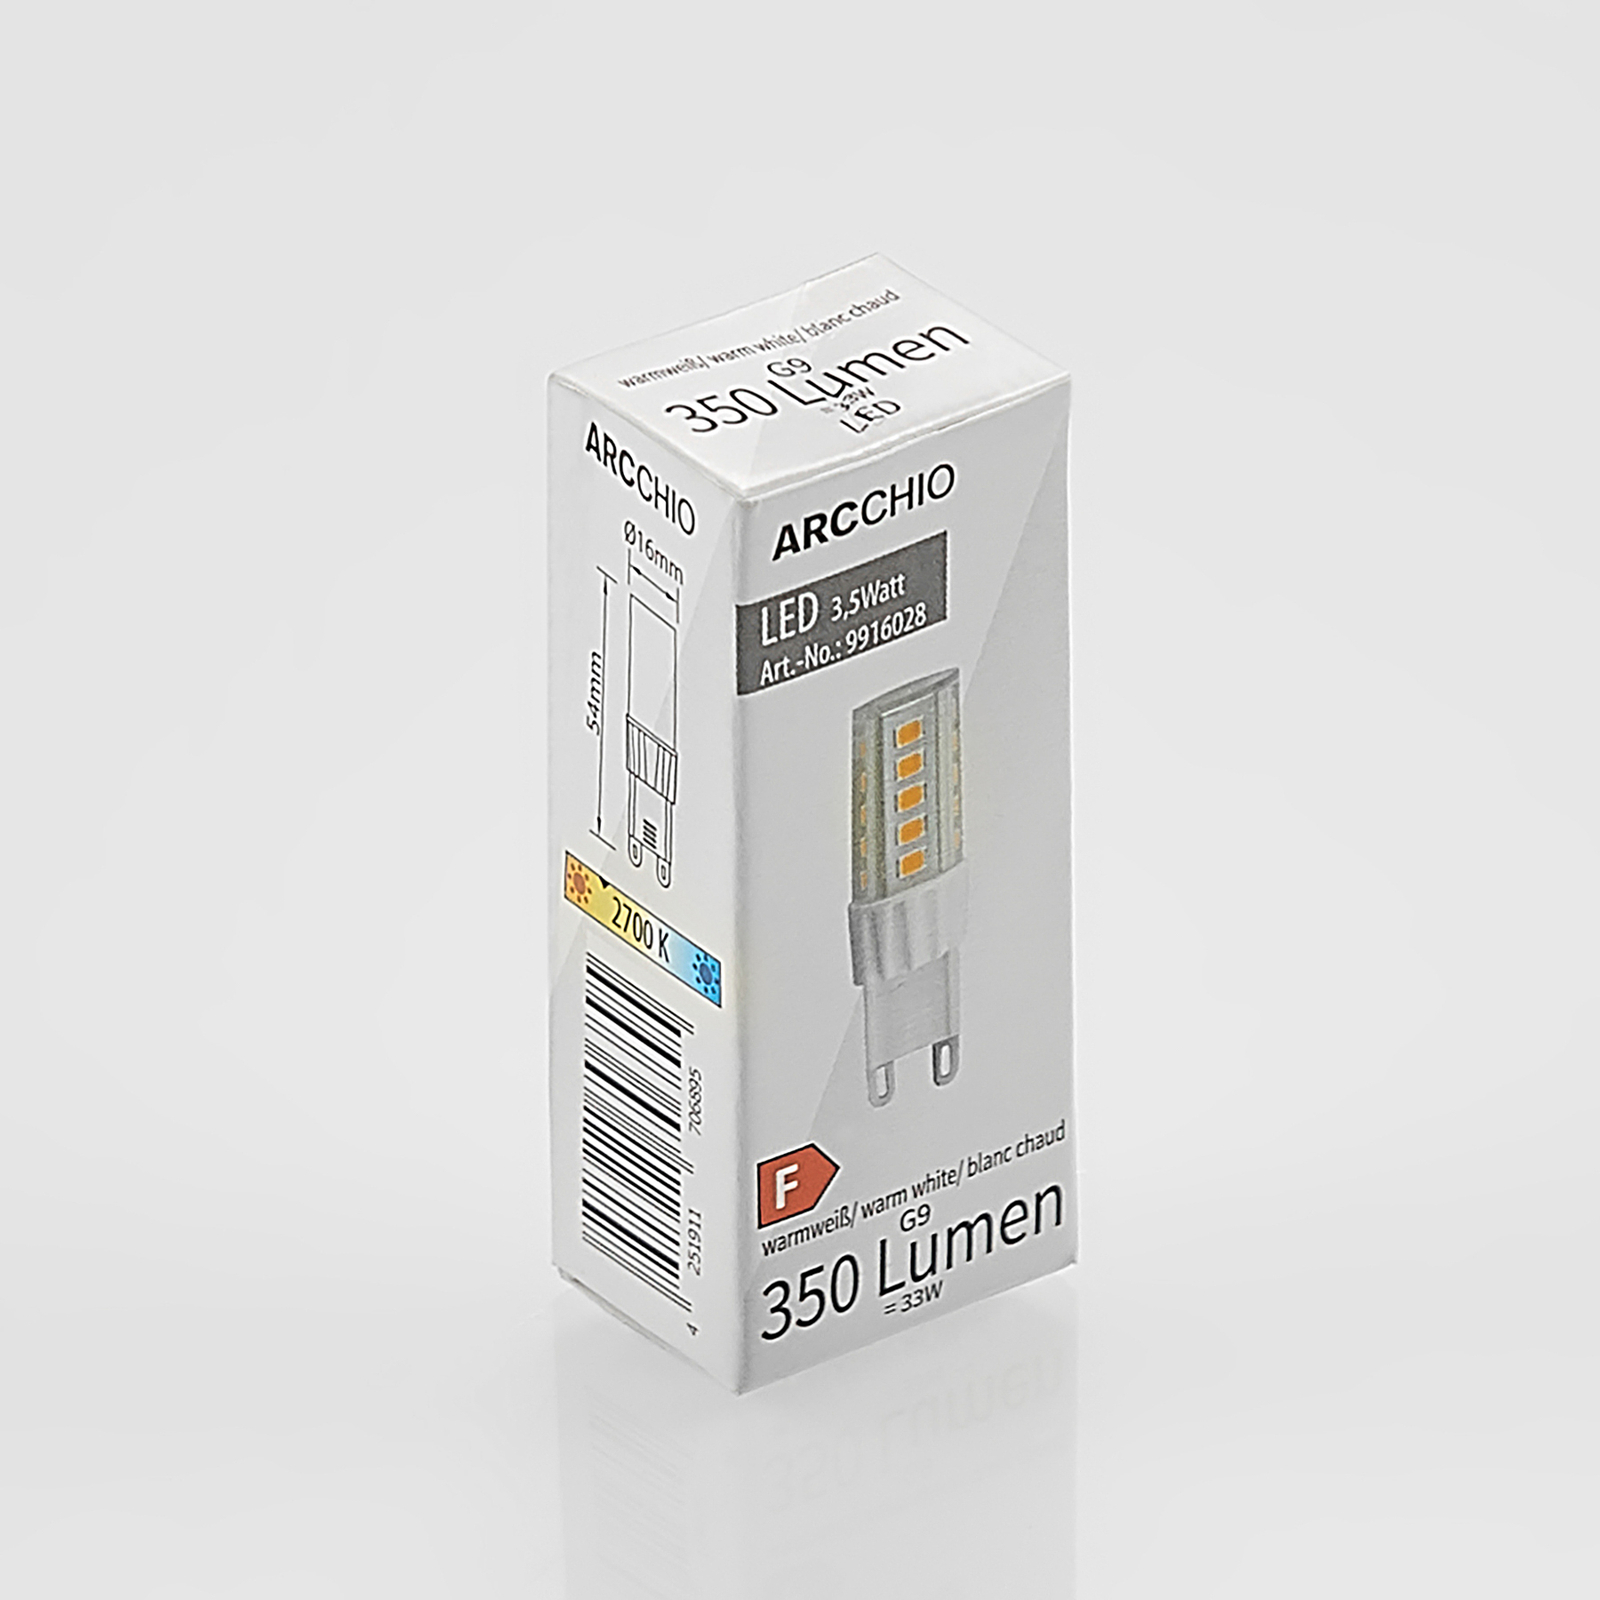 Lâmpada Arcchio LED com casquilho G9 3.5W 827 conjunto de 10